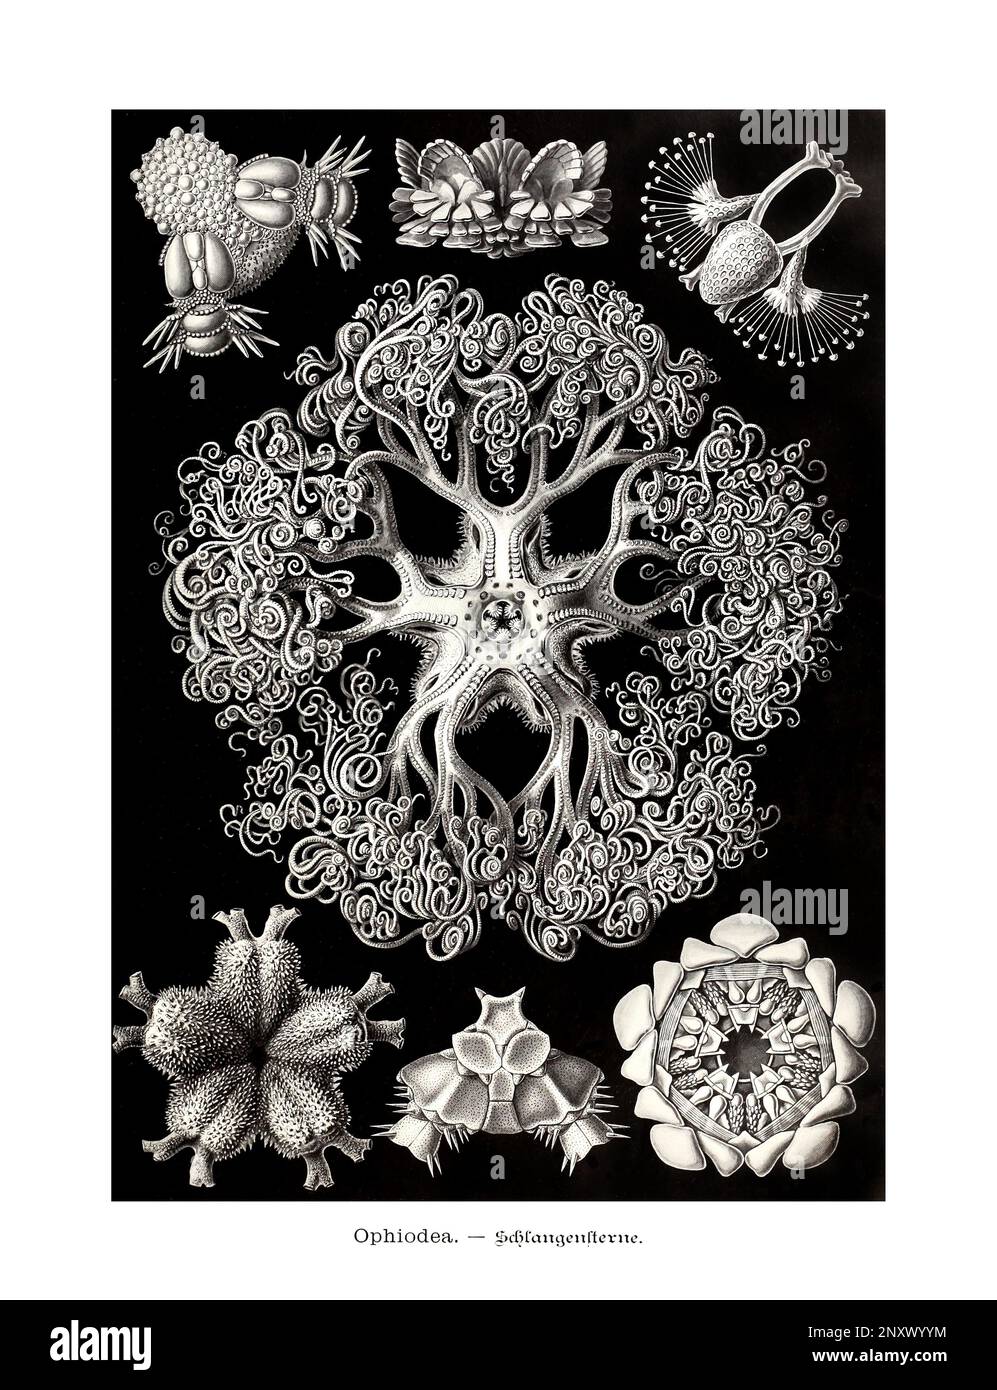 ERNST HAECKEL ART - Ophiodea, Meeressterne - 19. Jahrhundert - Antike zoologische Illustration - Illustrationen des Buches : "Kunstformen in der Natur" Stockfoto